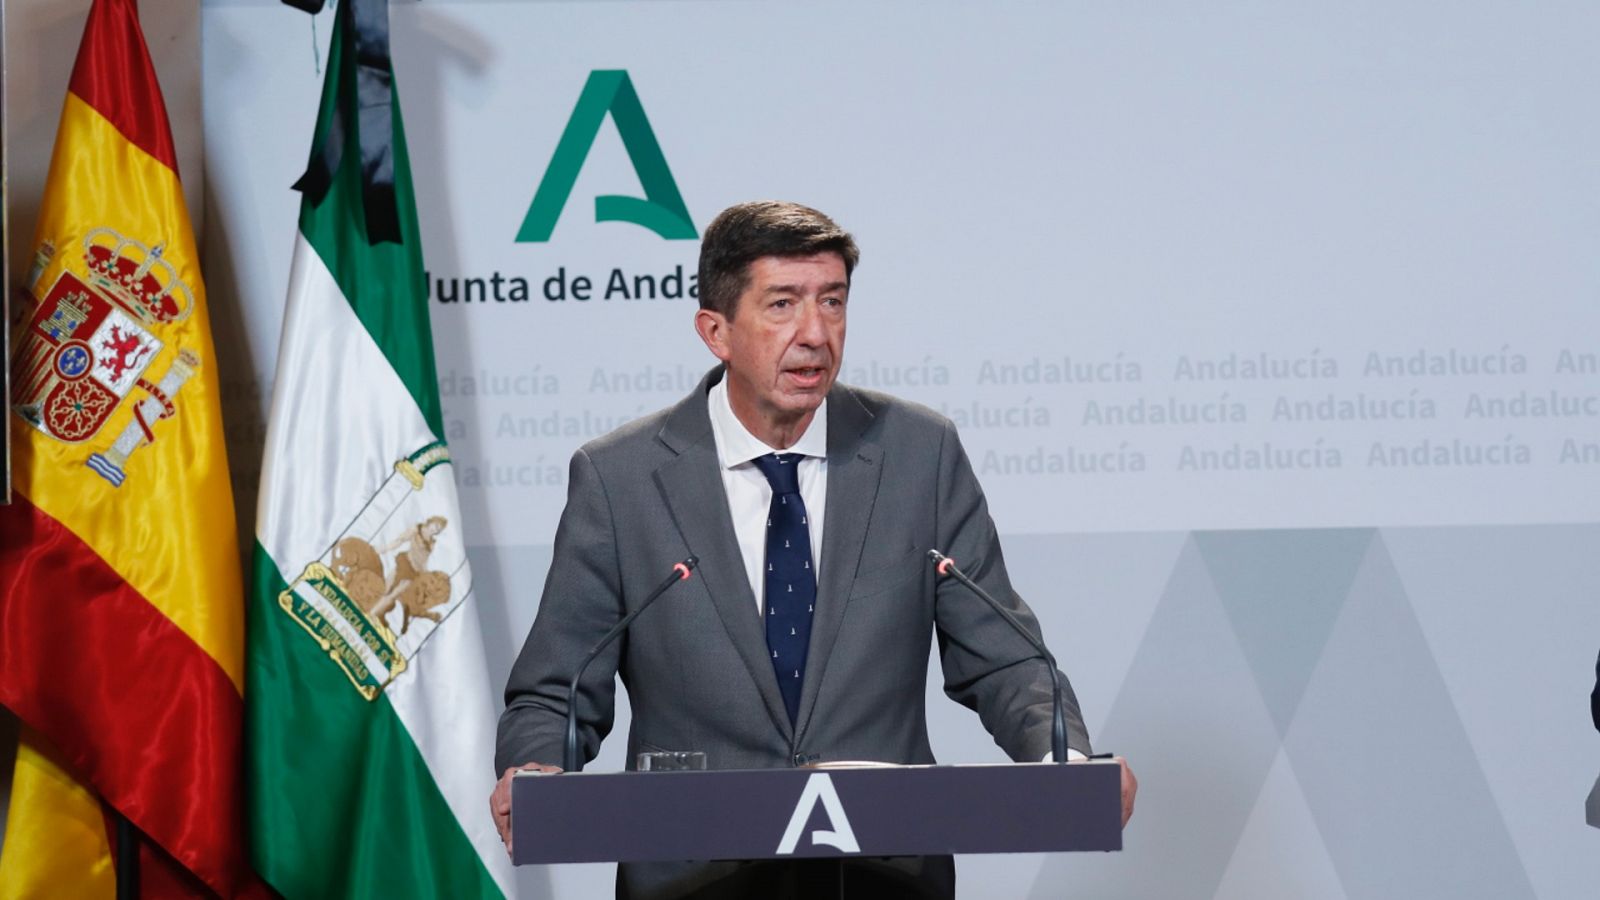 Las Mañanas de RNE - Juan Marín: "Para el PP de Andalucía va a ser muy incómodo formar Gobierno con otra fuerza que no sea Ciudadanos" - Escuchar ahora